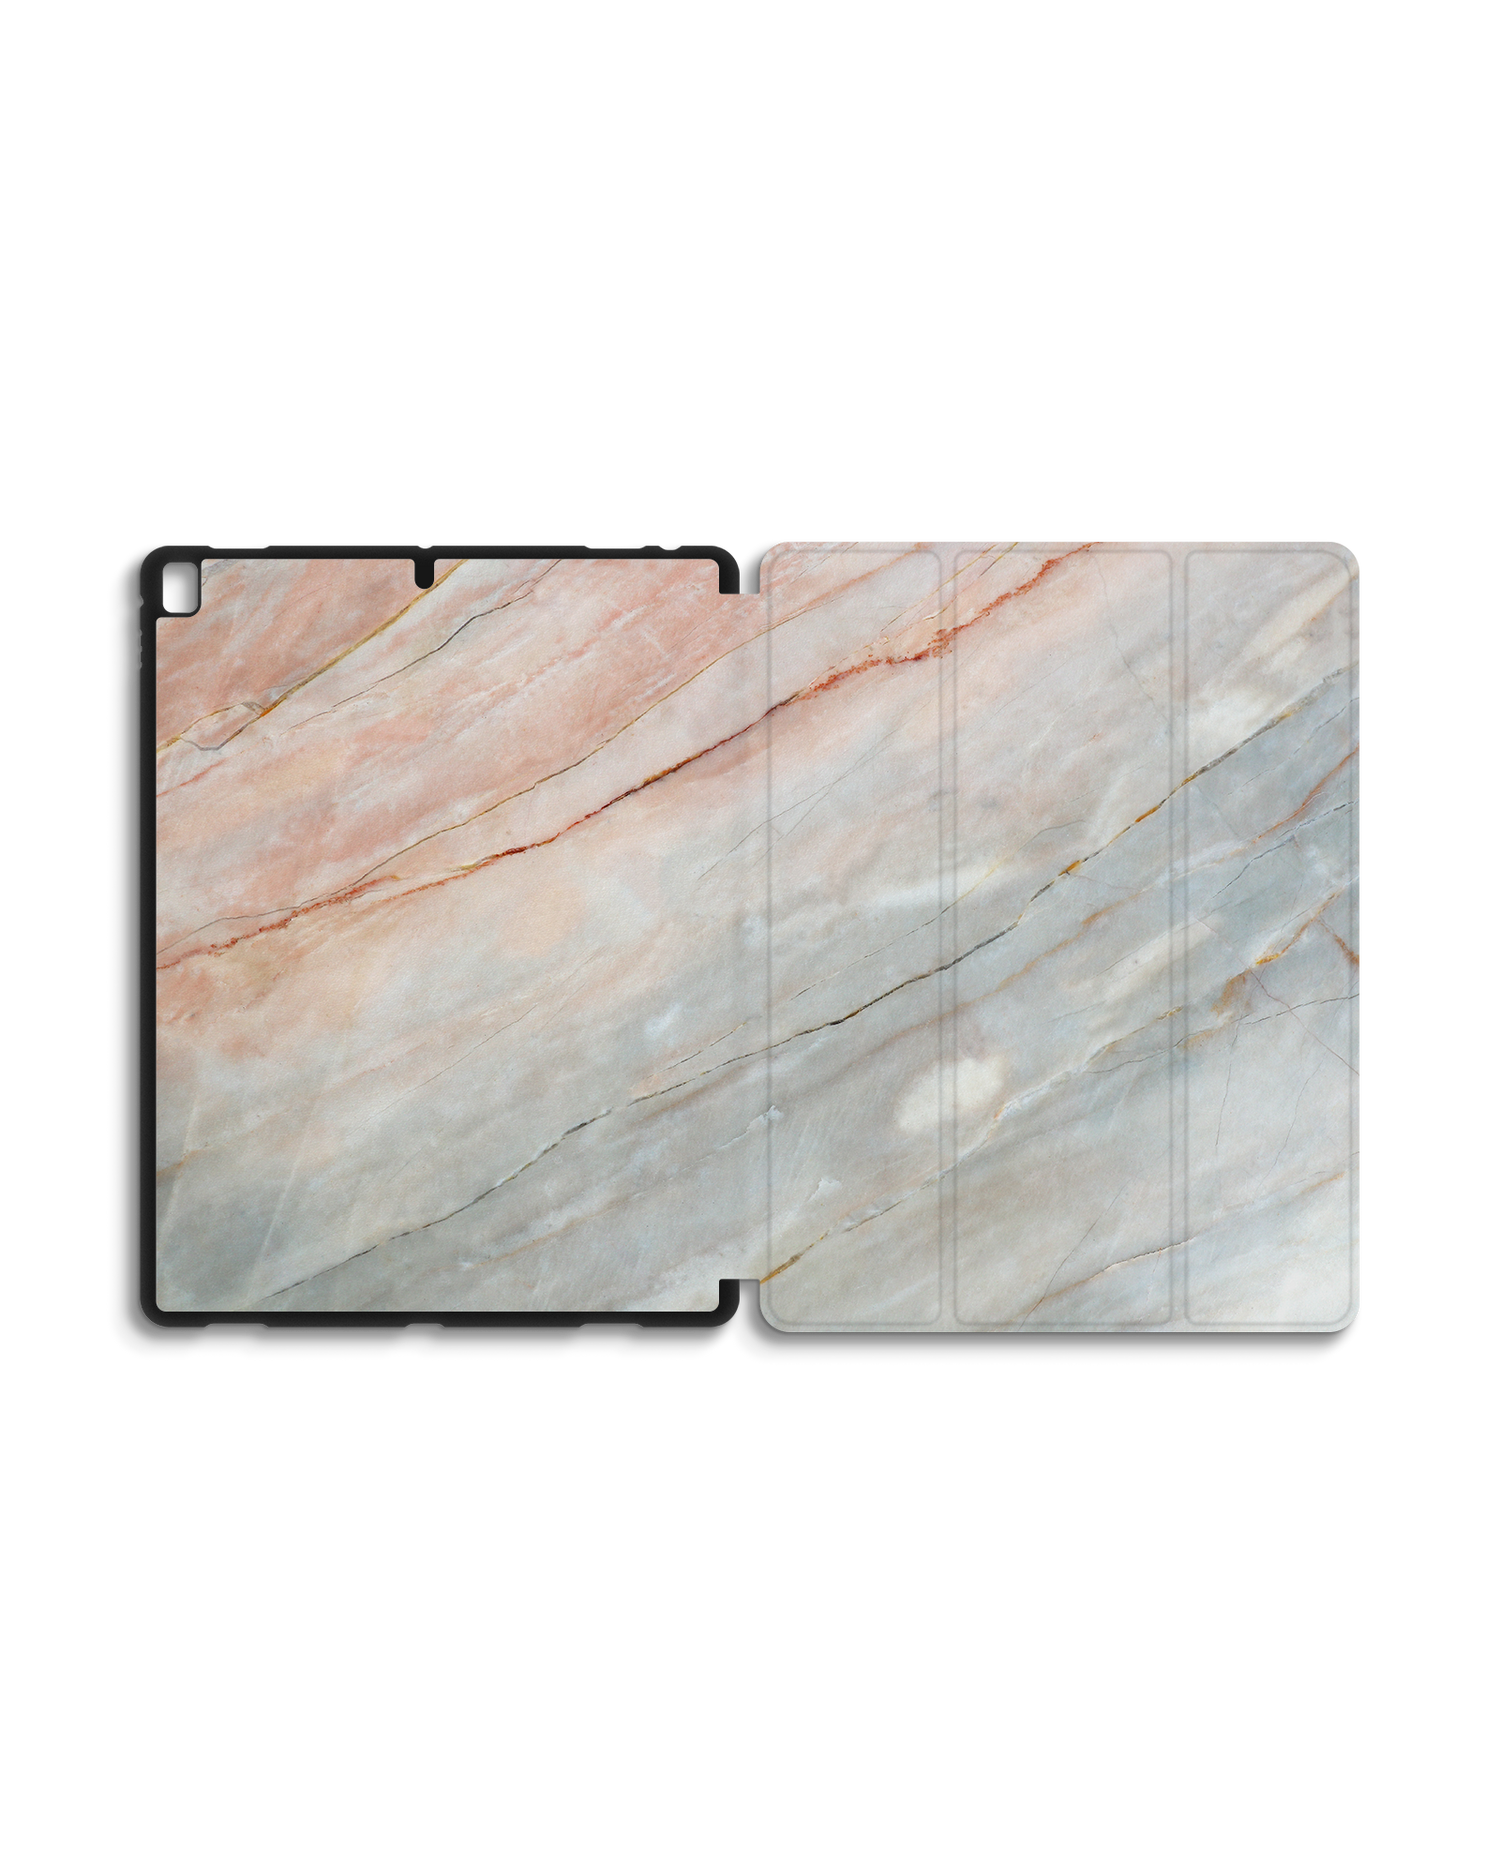 Mother of Pearl Marble iPad Hülle mit Stifthalter für Apple iPad Pro 2 12.9'' (2017): Geöffnet Außenansicht